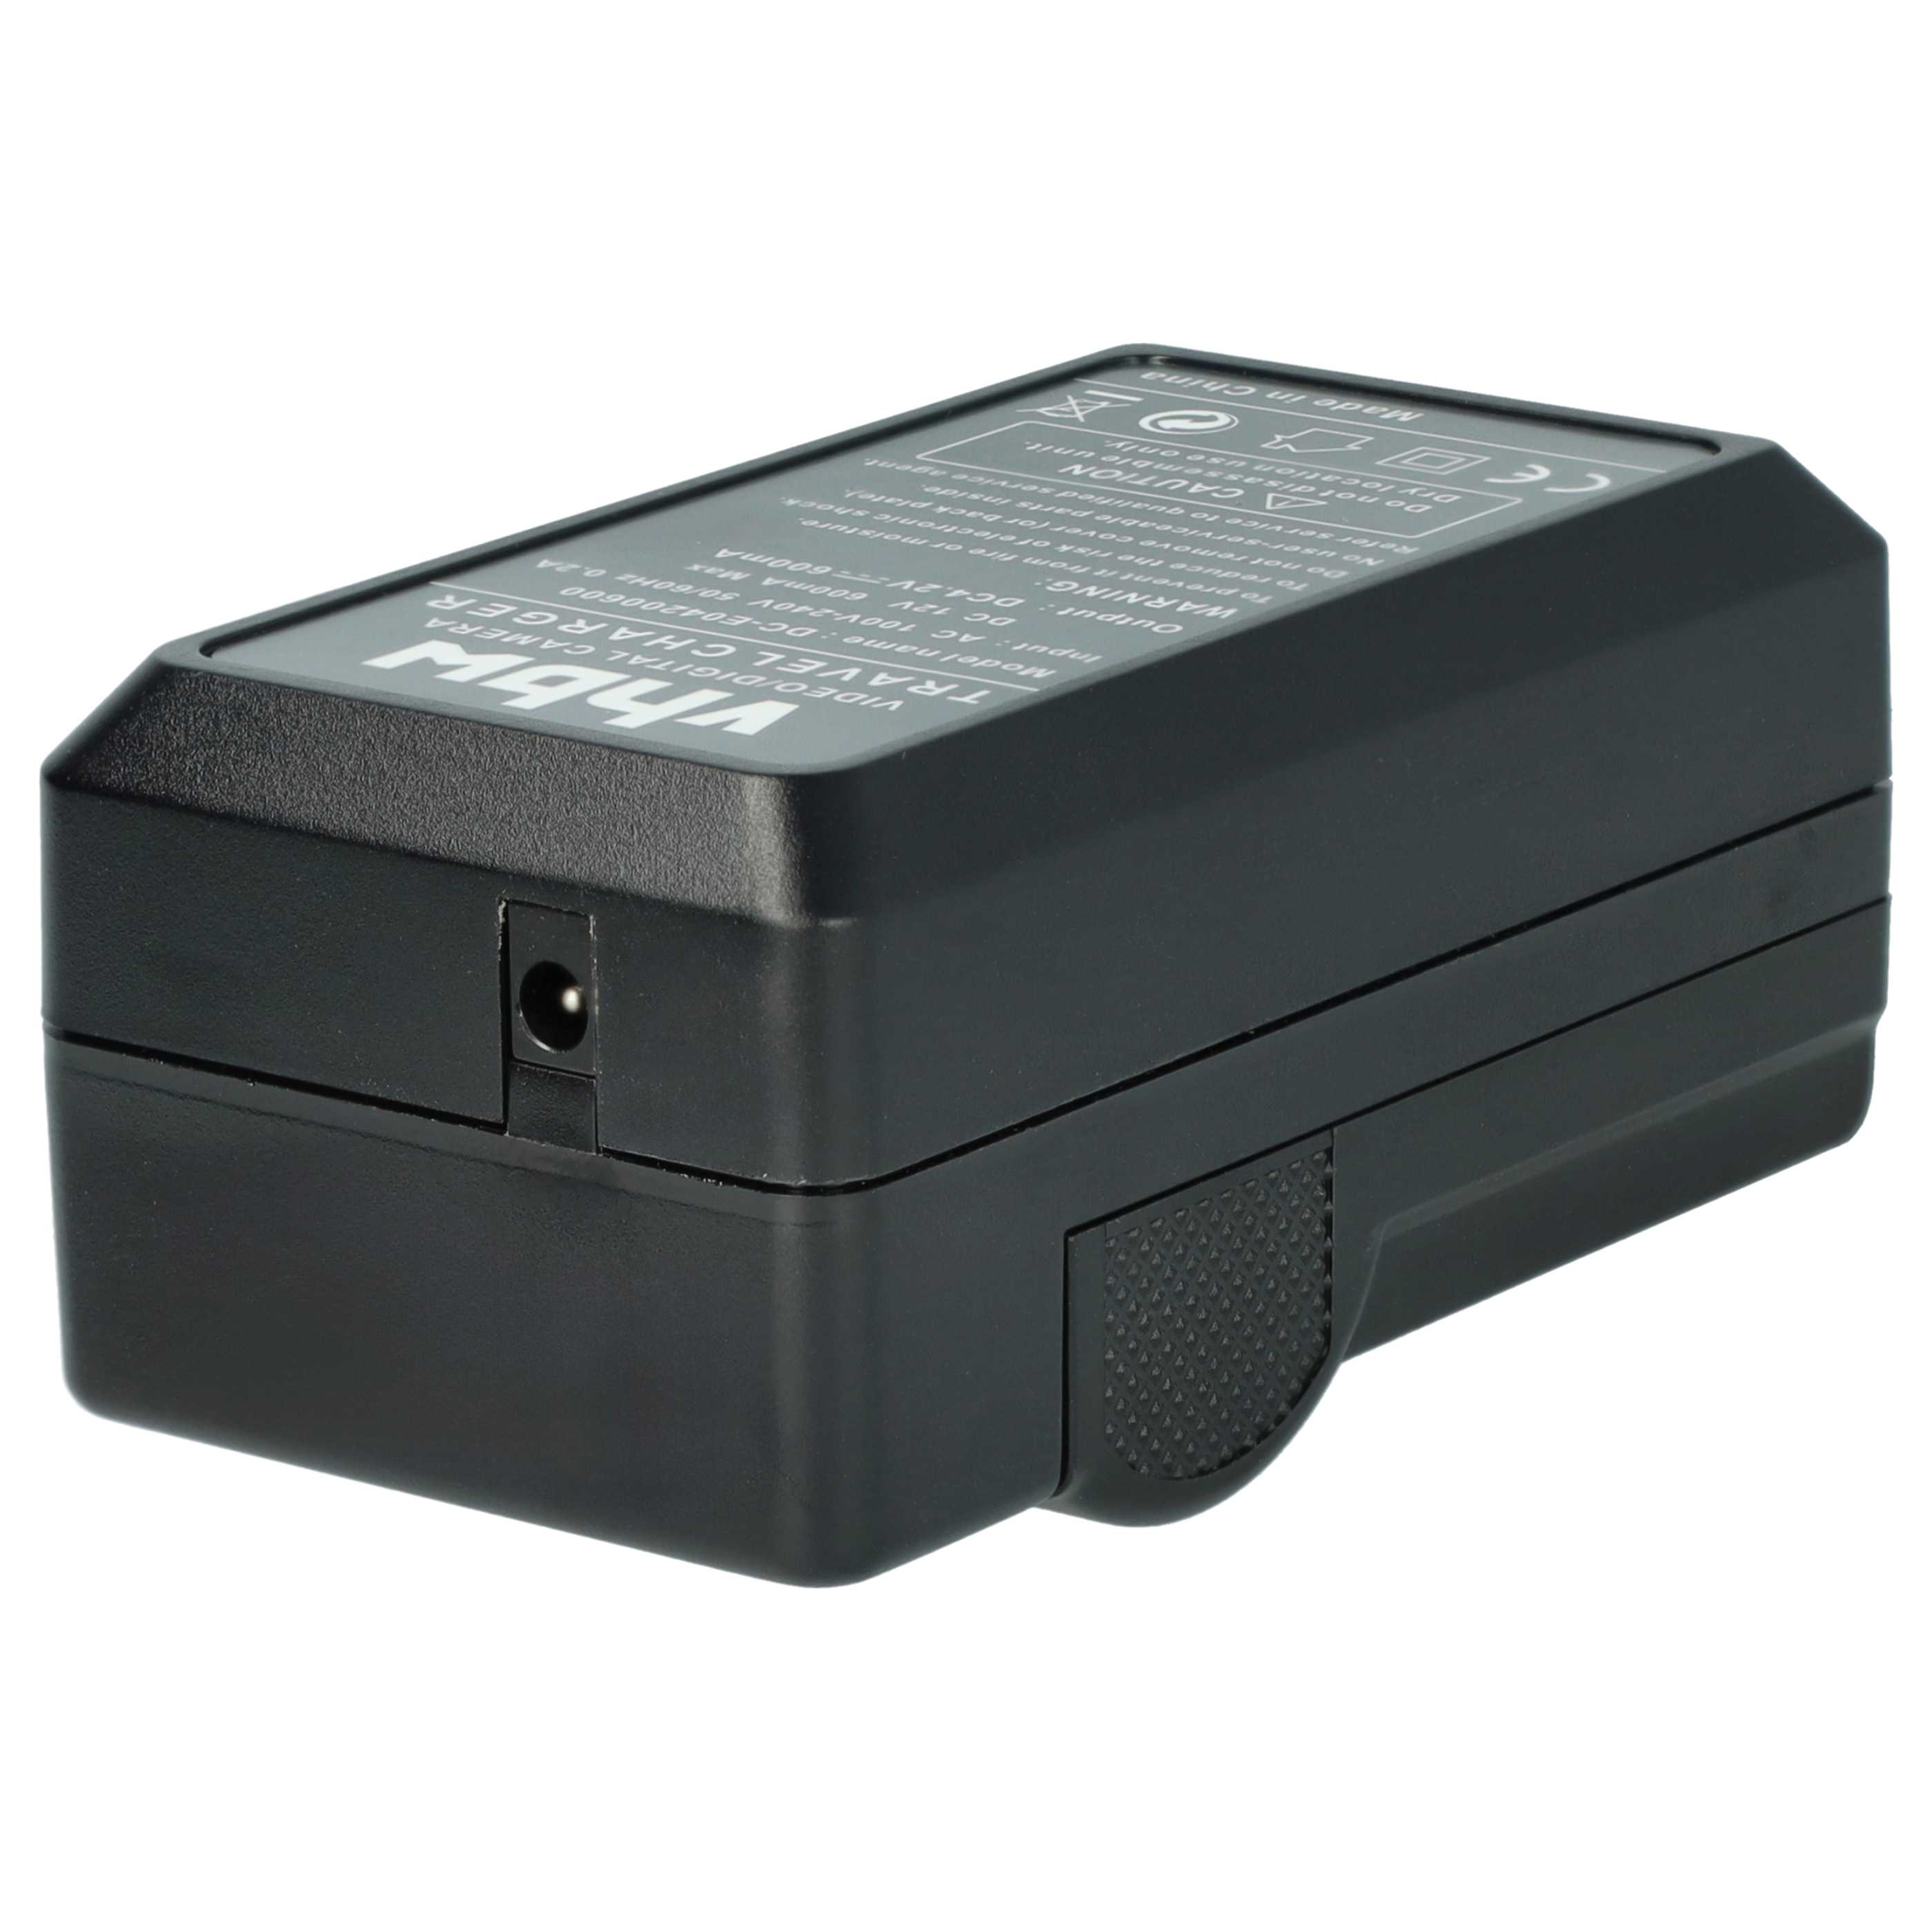 Akku Ladegerät passend für Coolpix 3700 Kamera u.a. - 0,6 A, 4,2 V